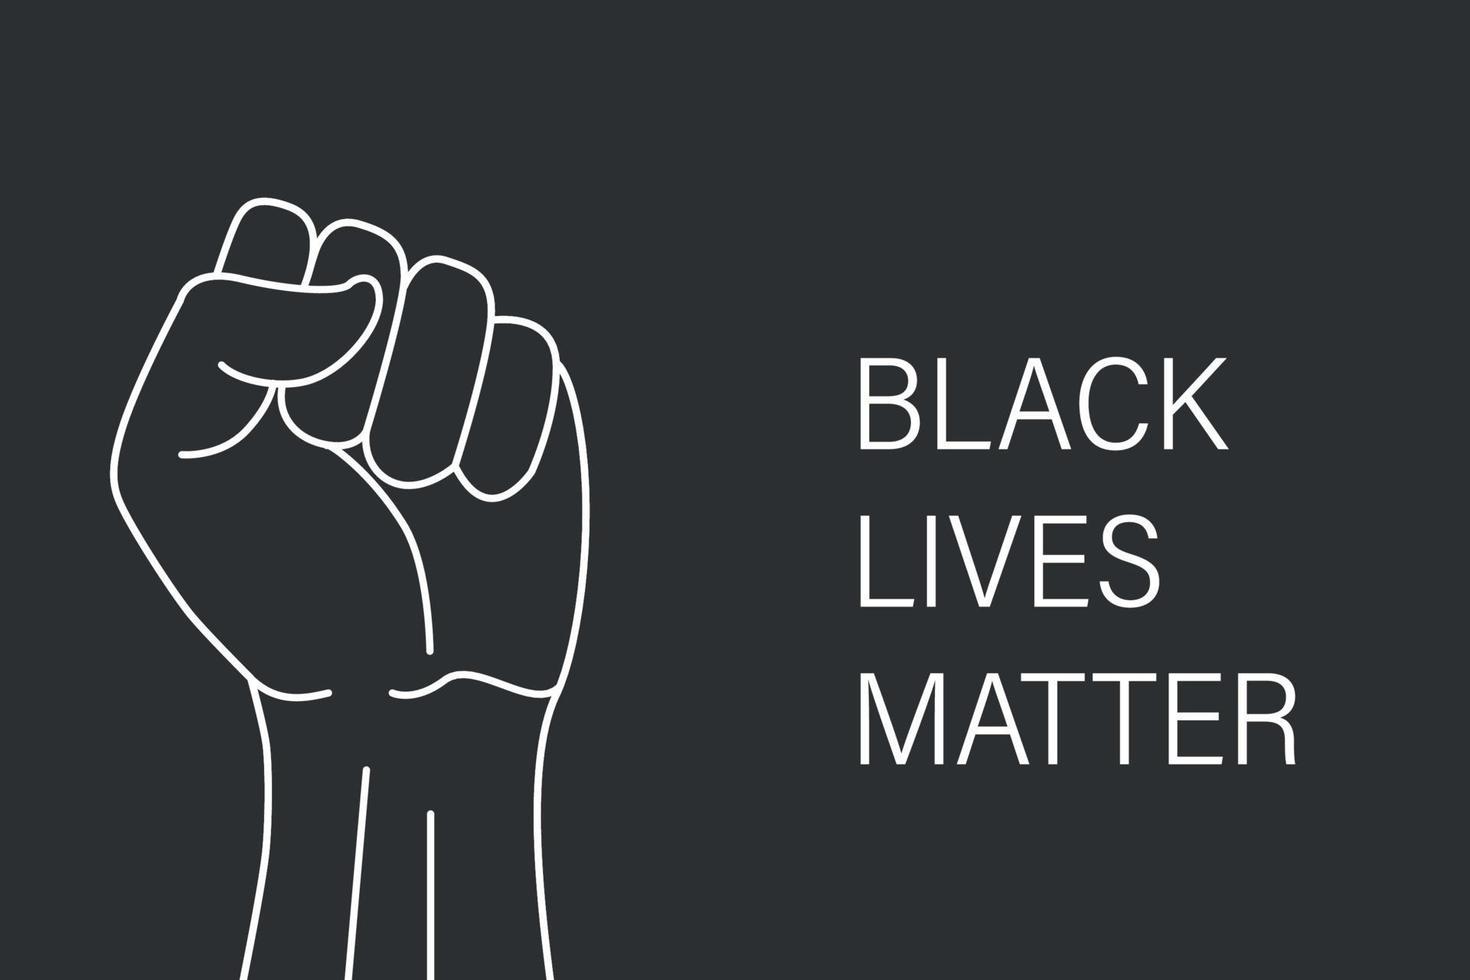 Black lives matter banner design Template for your design vector